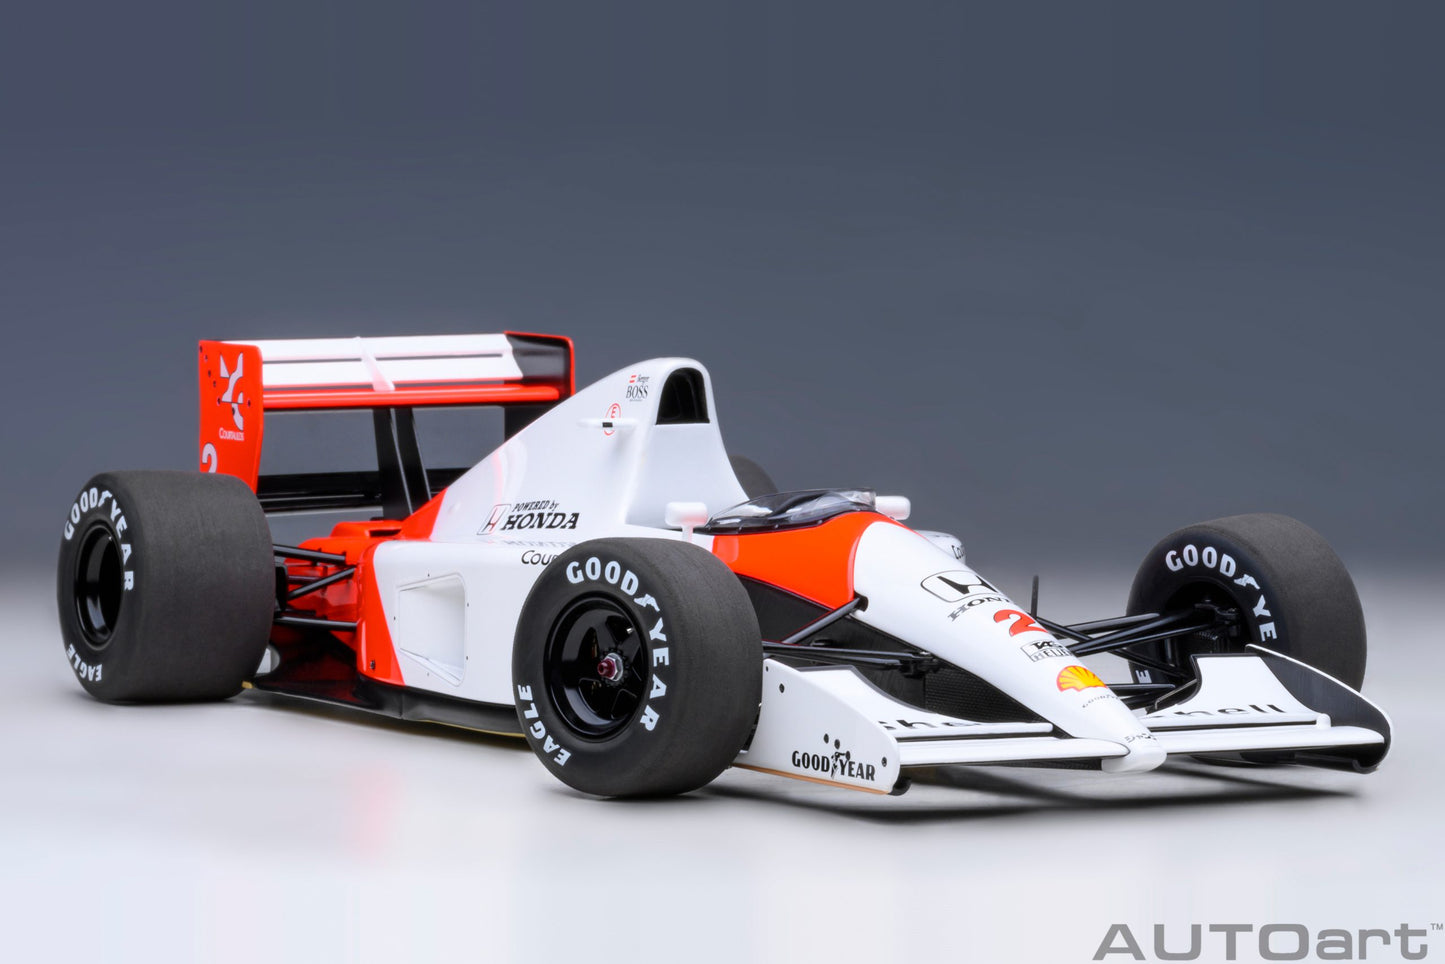 AUTOart 1:18 McLaren Honda MP4/6 F1 1991 #2 (without McLaren logo) 89152